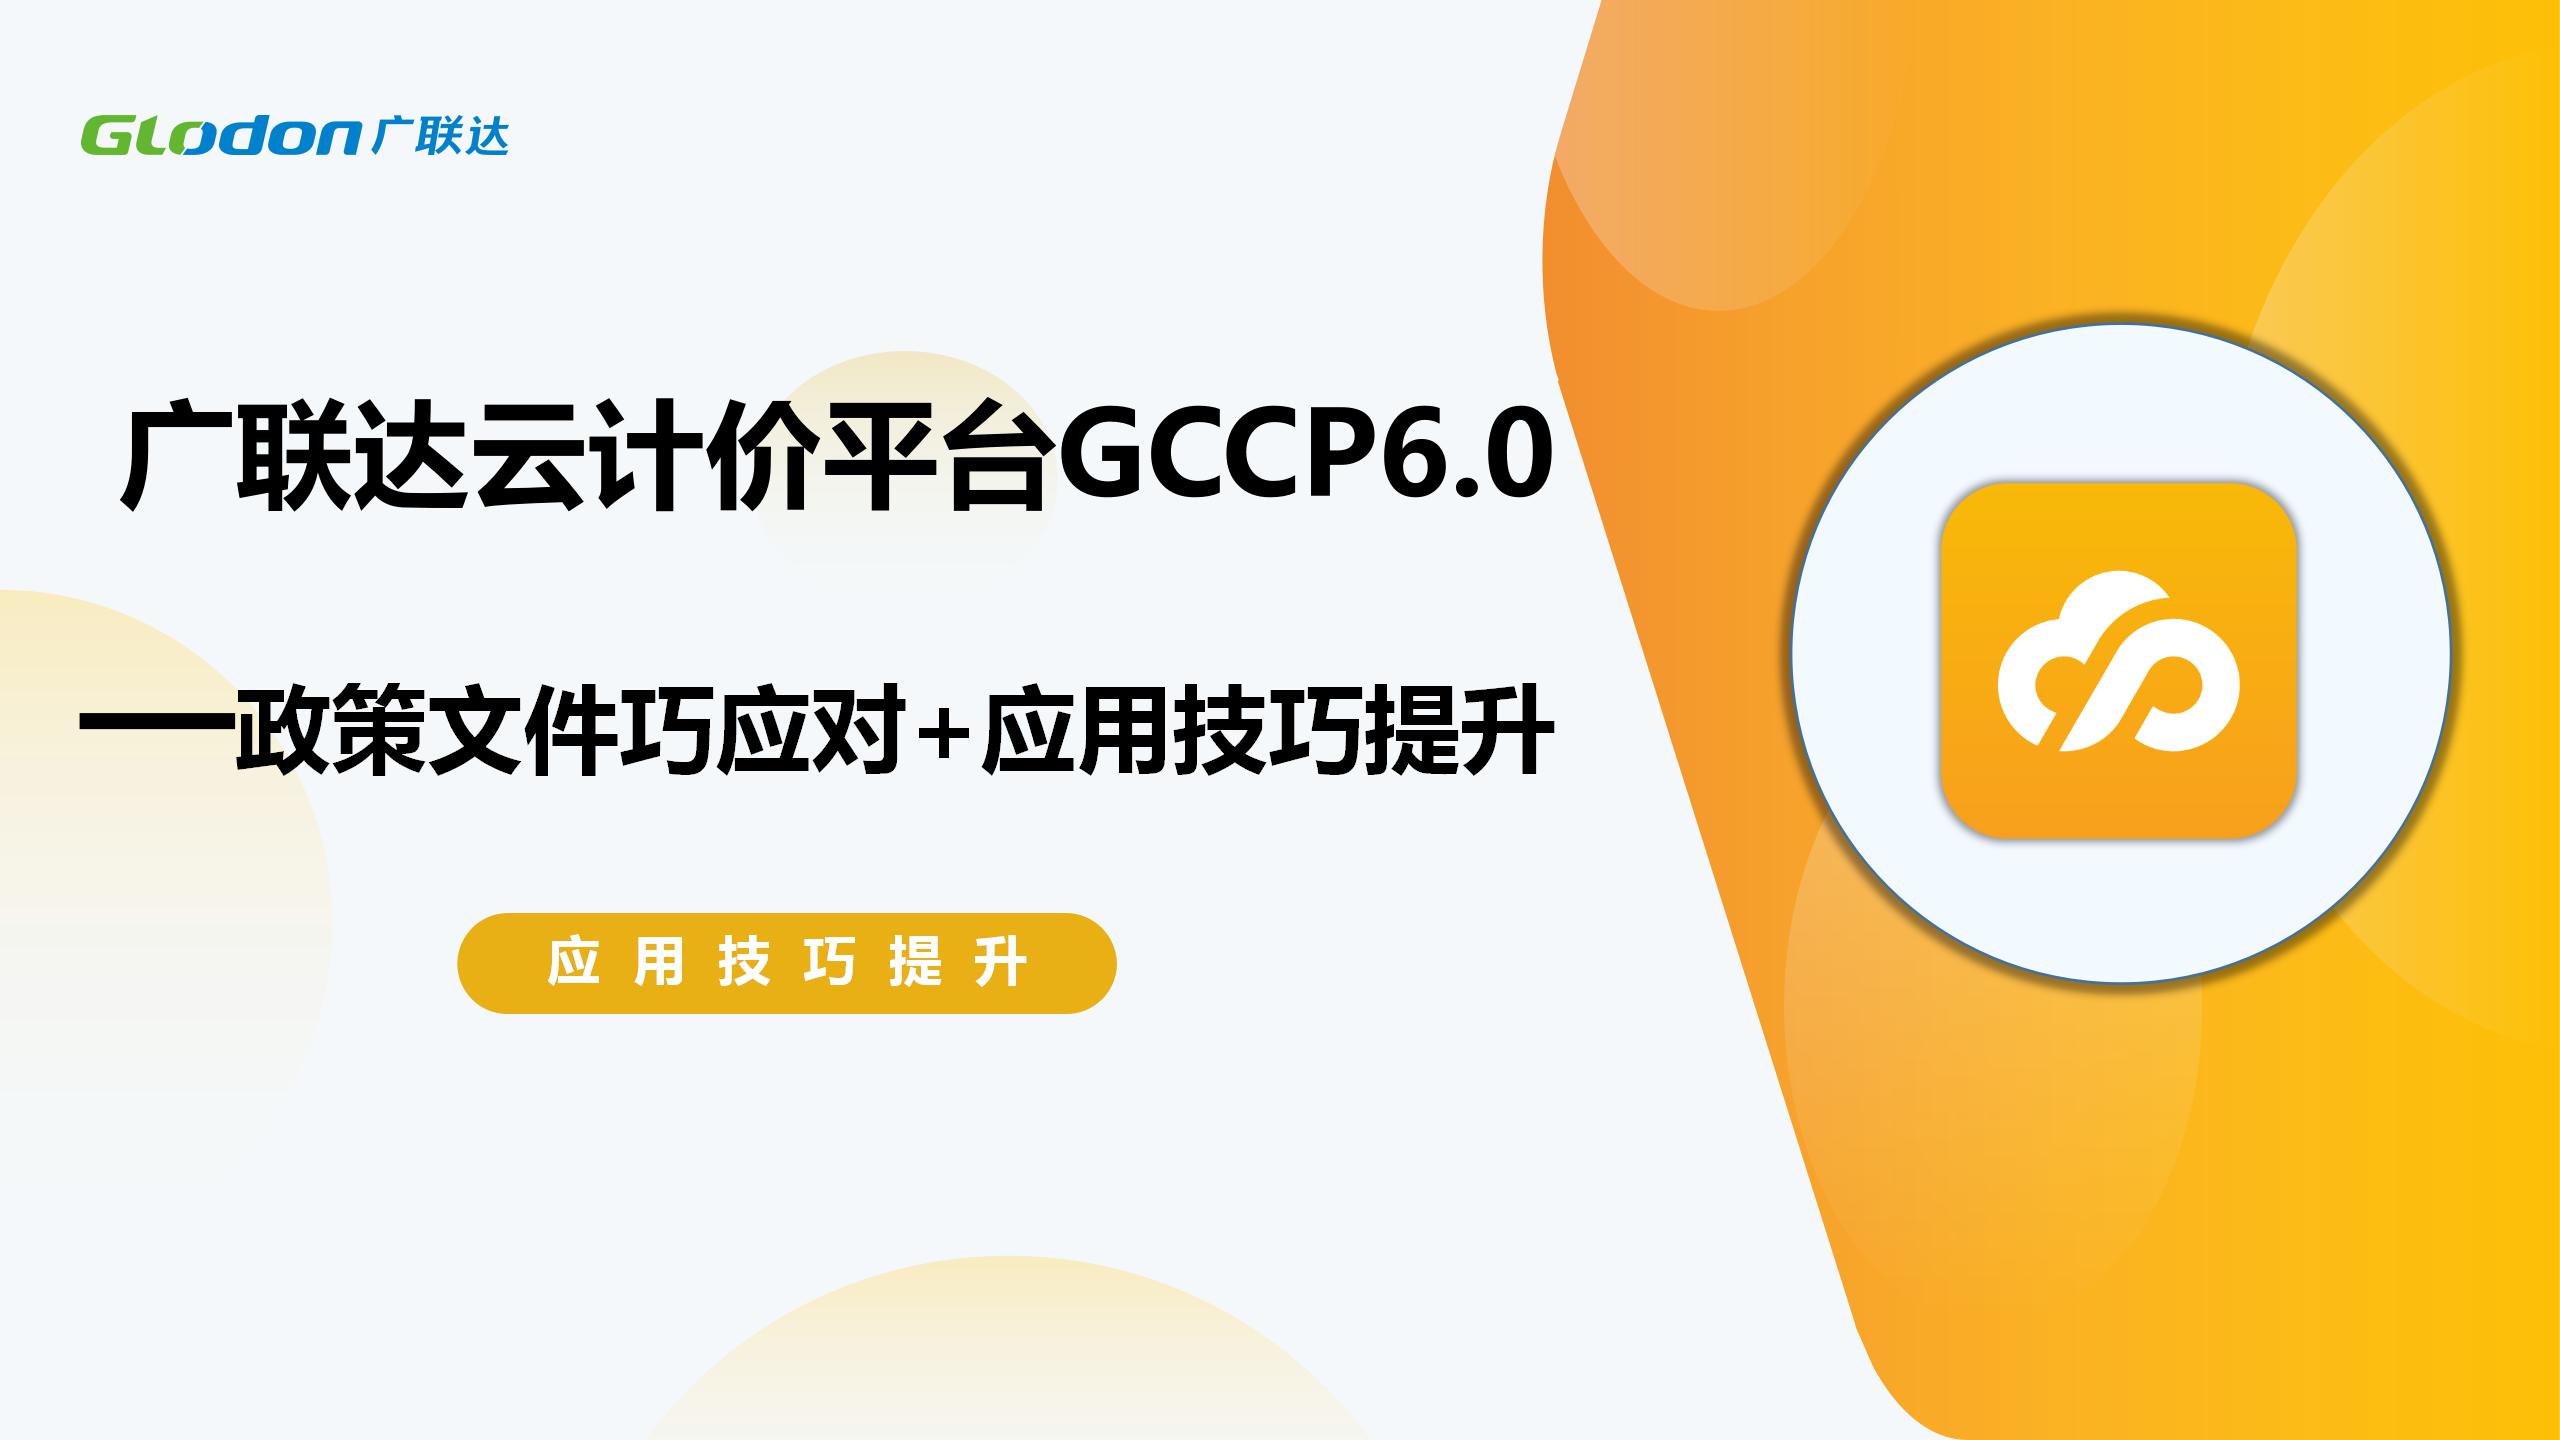 广联达云计价平台GCCP6.0 政策文件巧应对+应用技巧提升